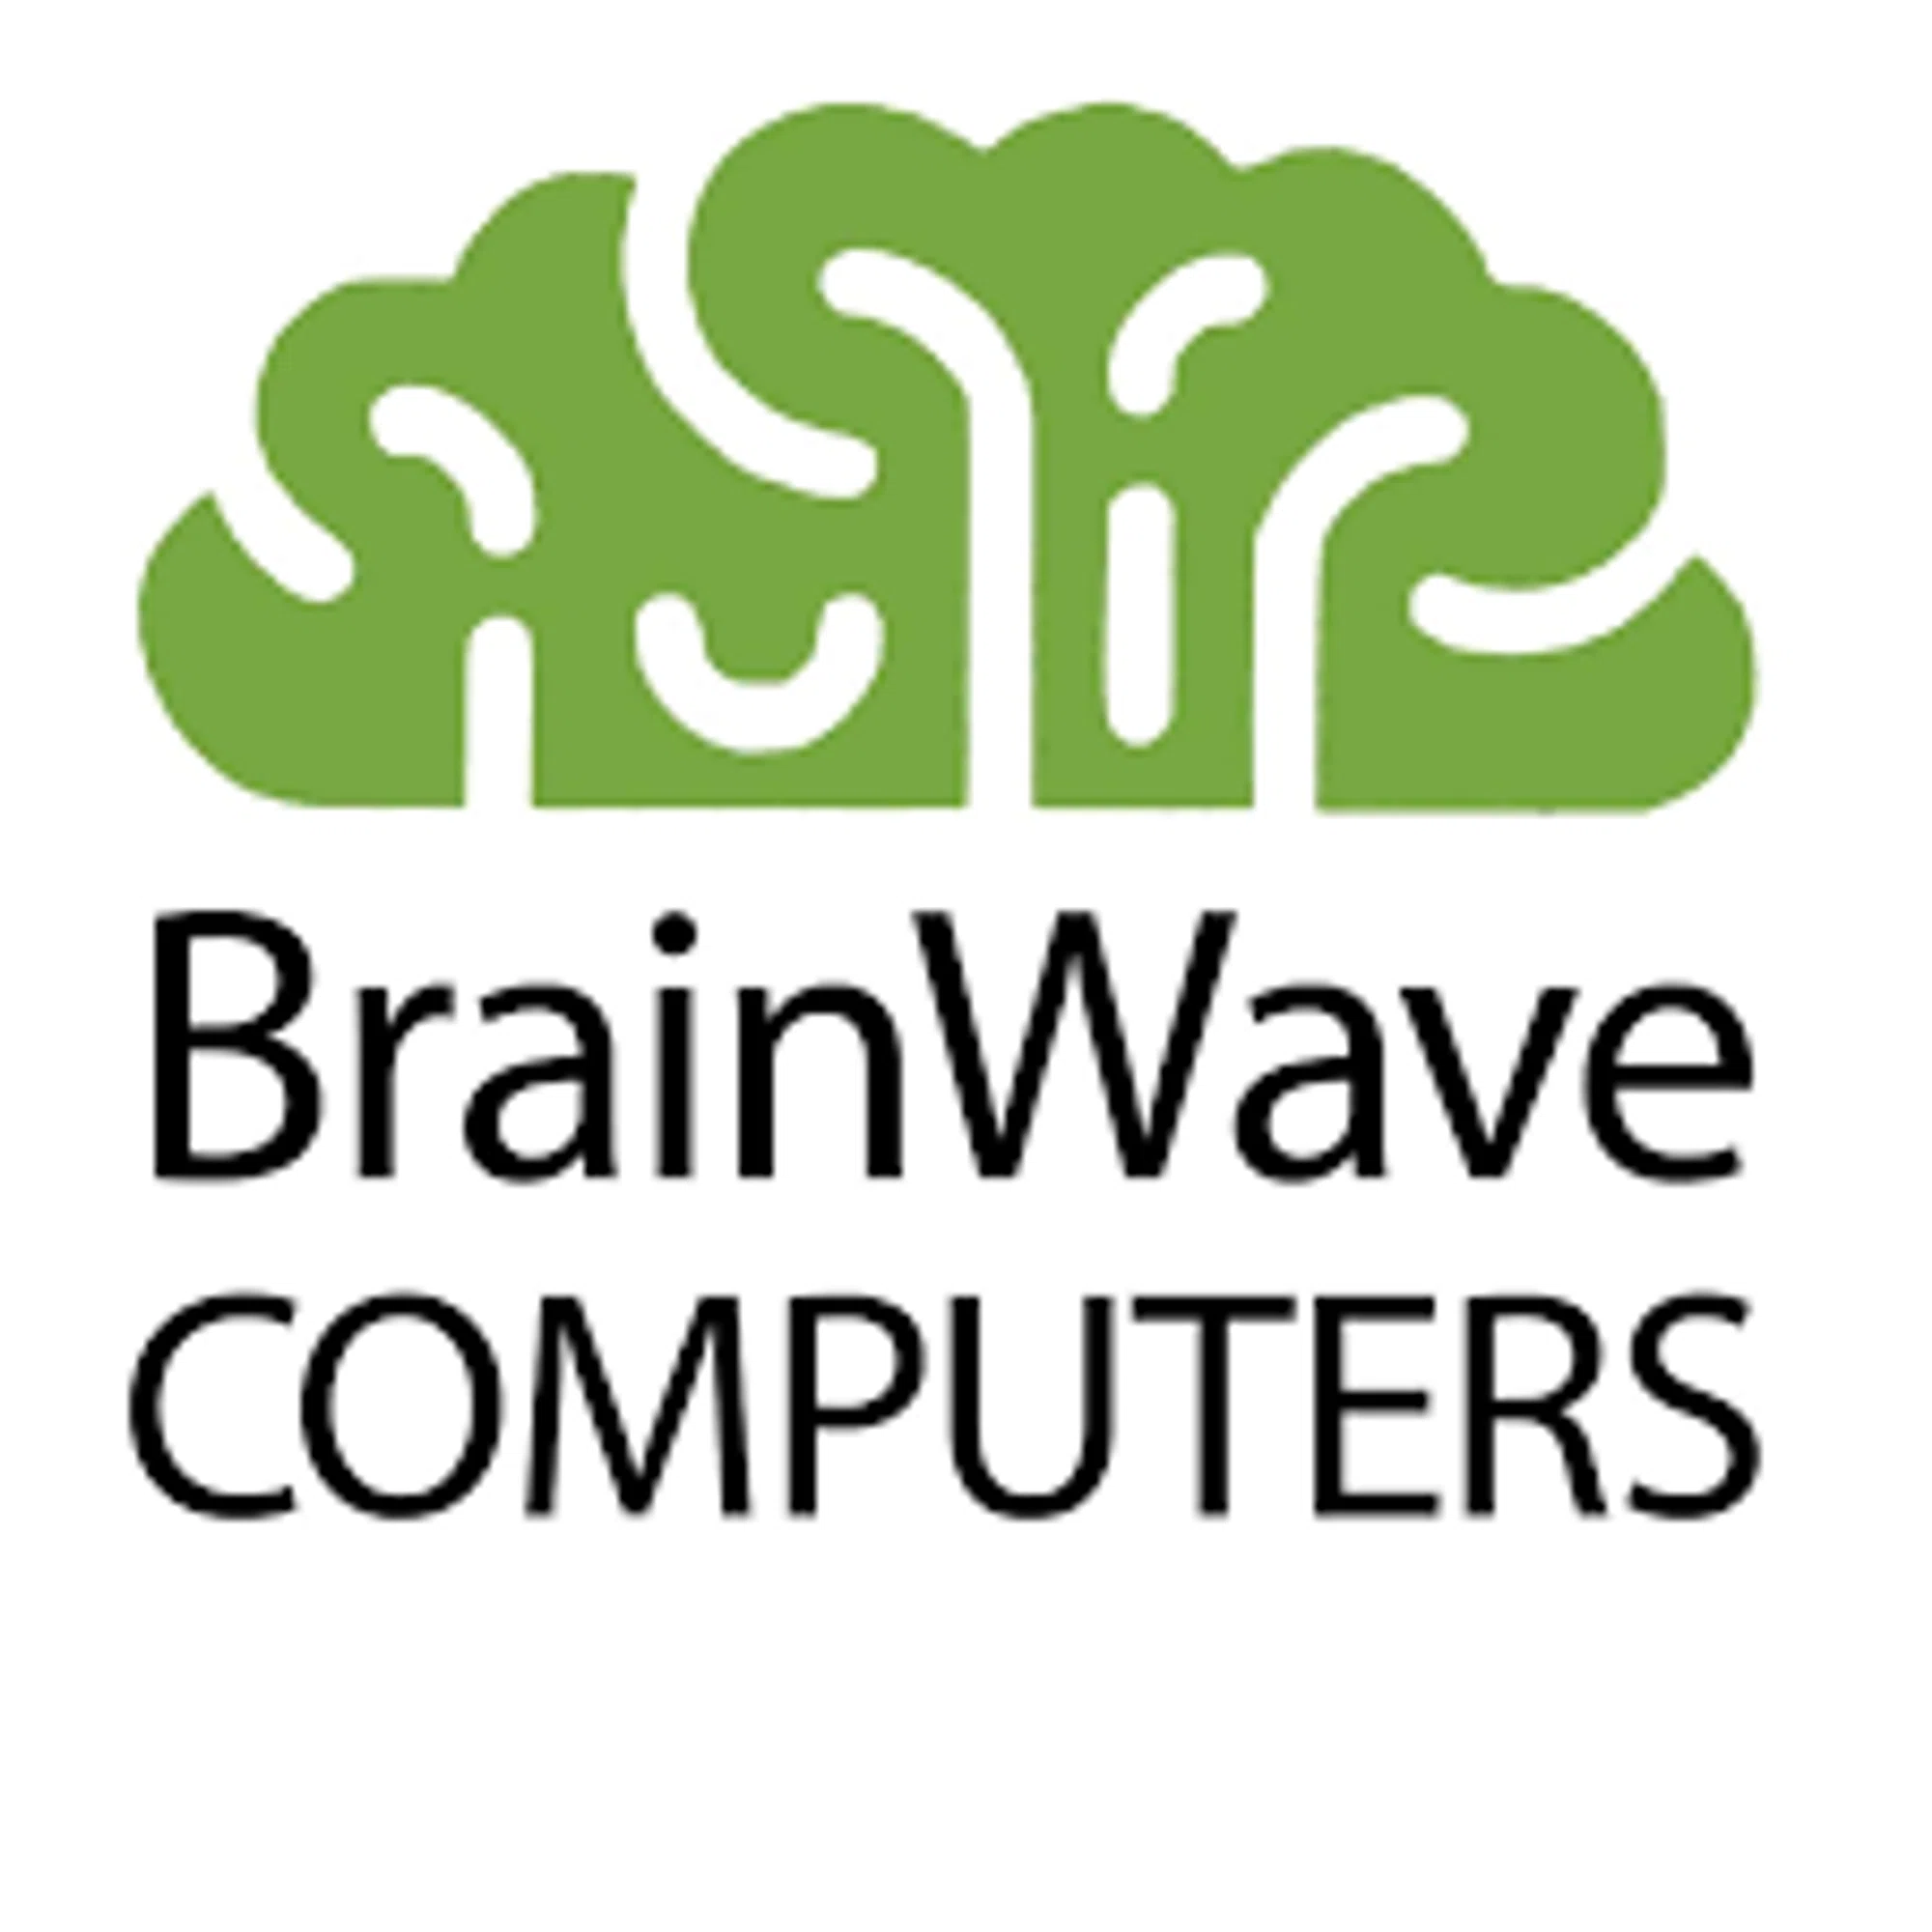 BrainWave Computers